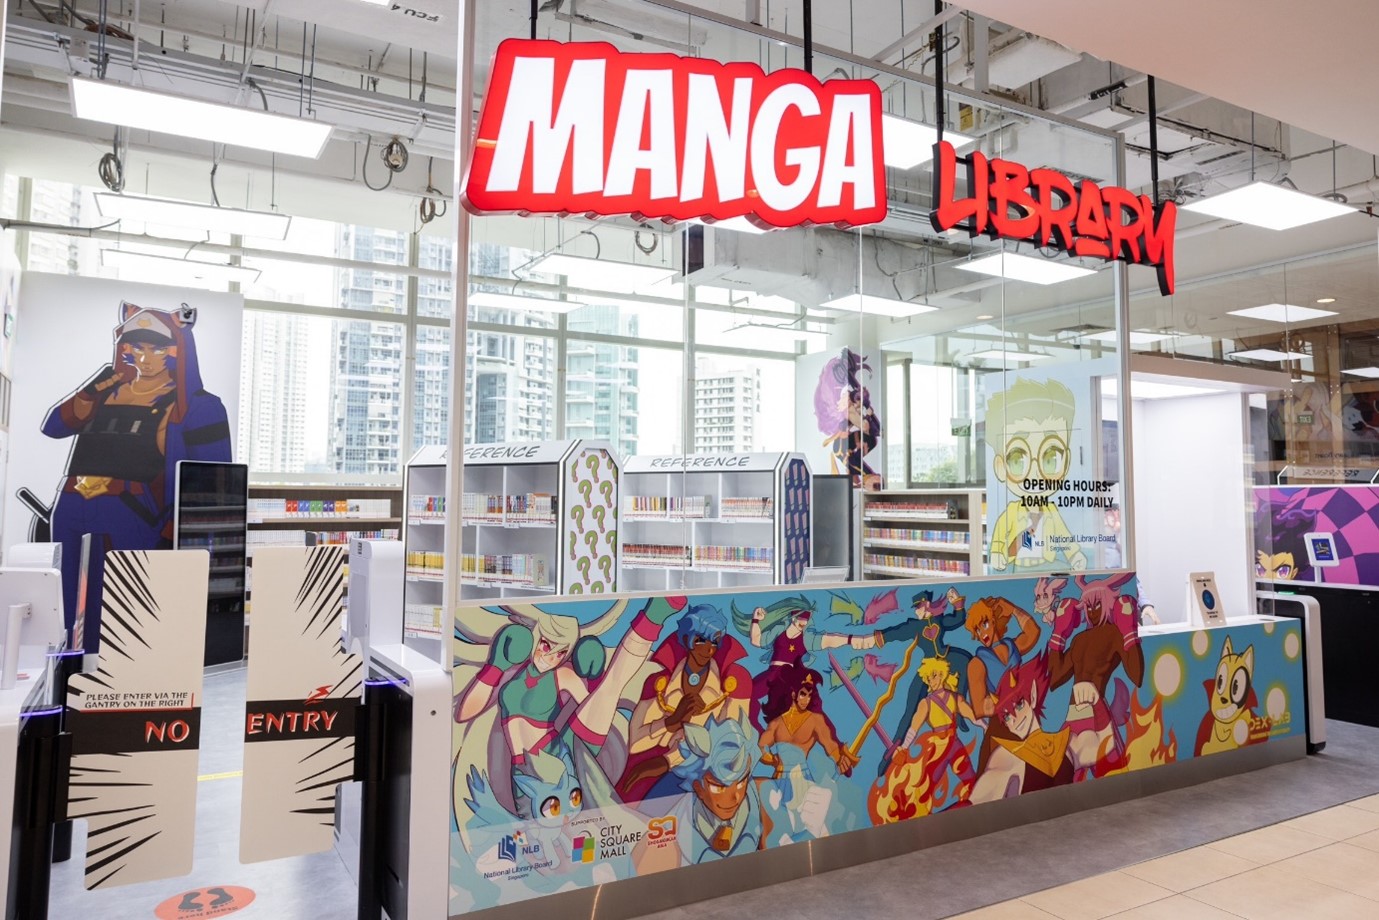 Manga Library facade at City Square Mall